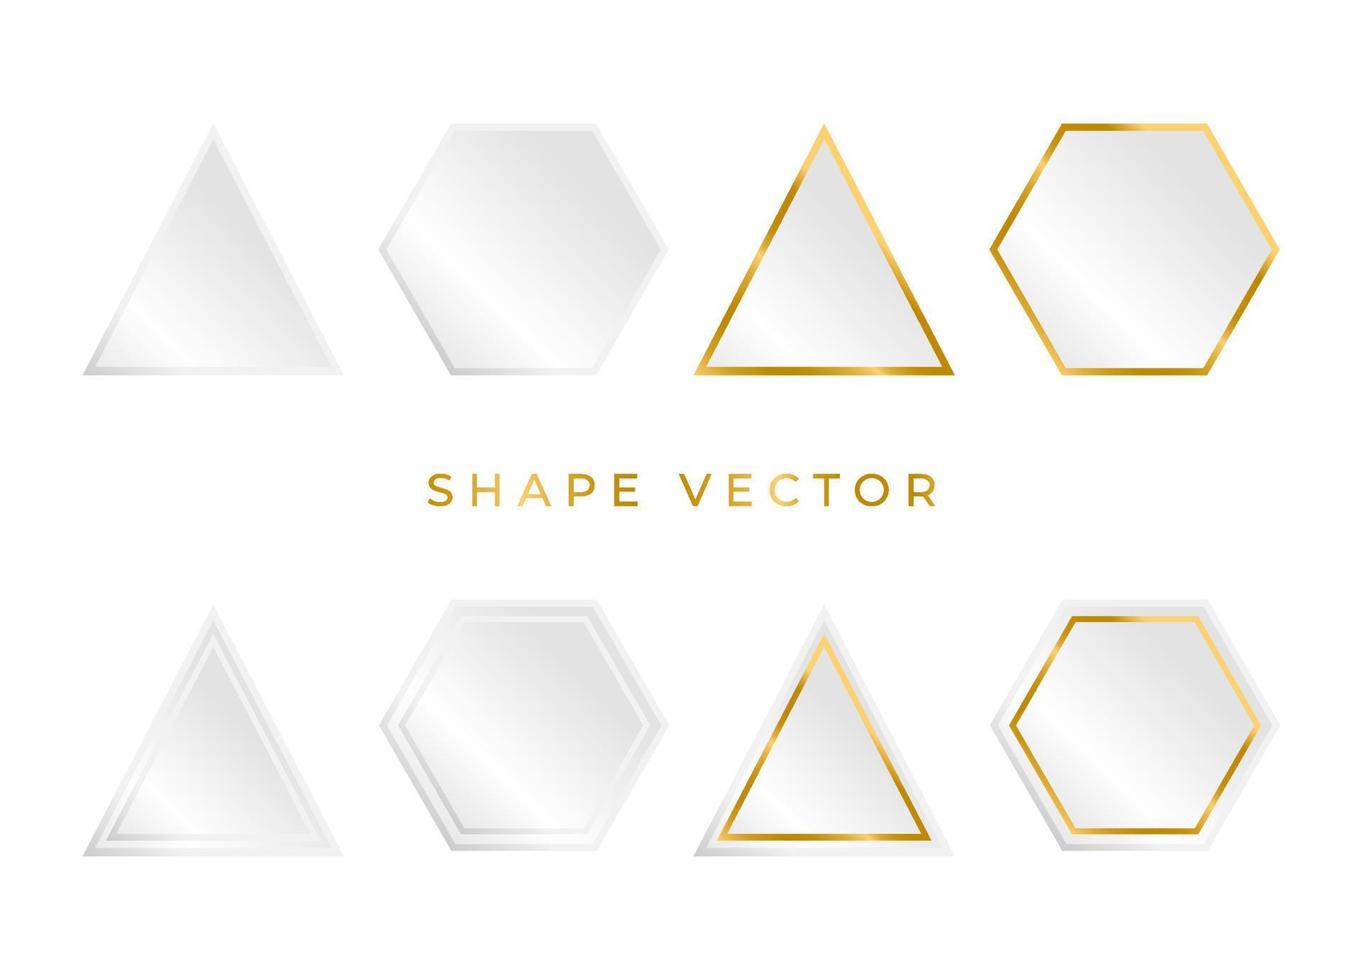 einfaches 3D-Weiß- und Goldformbrett oder Rahmenvektor auf weißem Hintergrund mit dem Kreis, der Ellipse, dem Quadrat kann Text oder Produkt auf den Rahmen gesetzt werden vektor